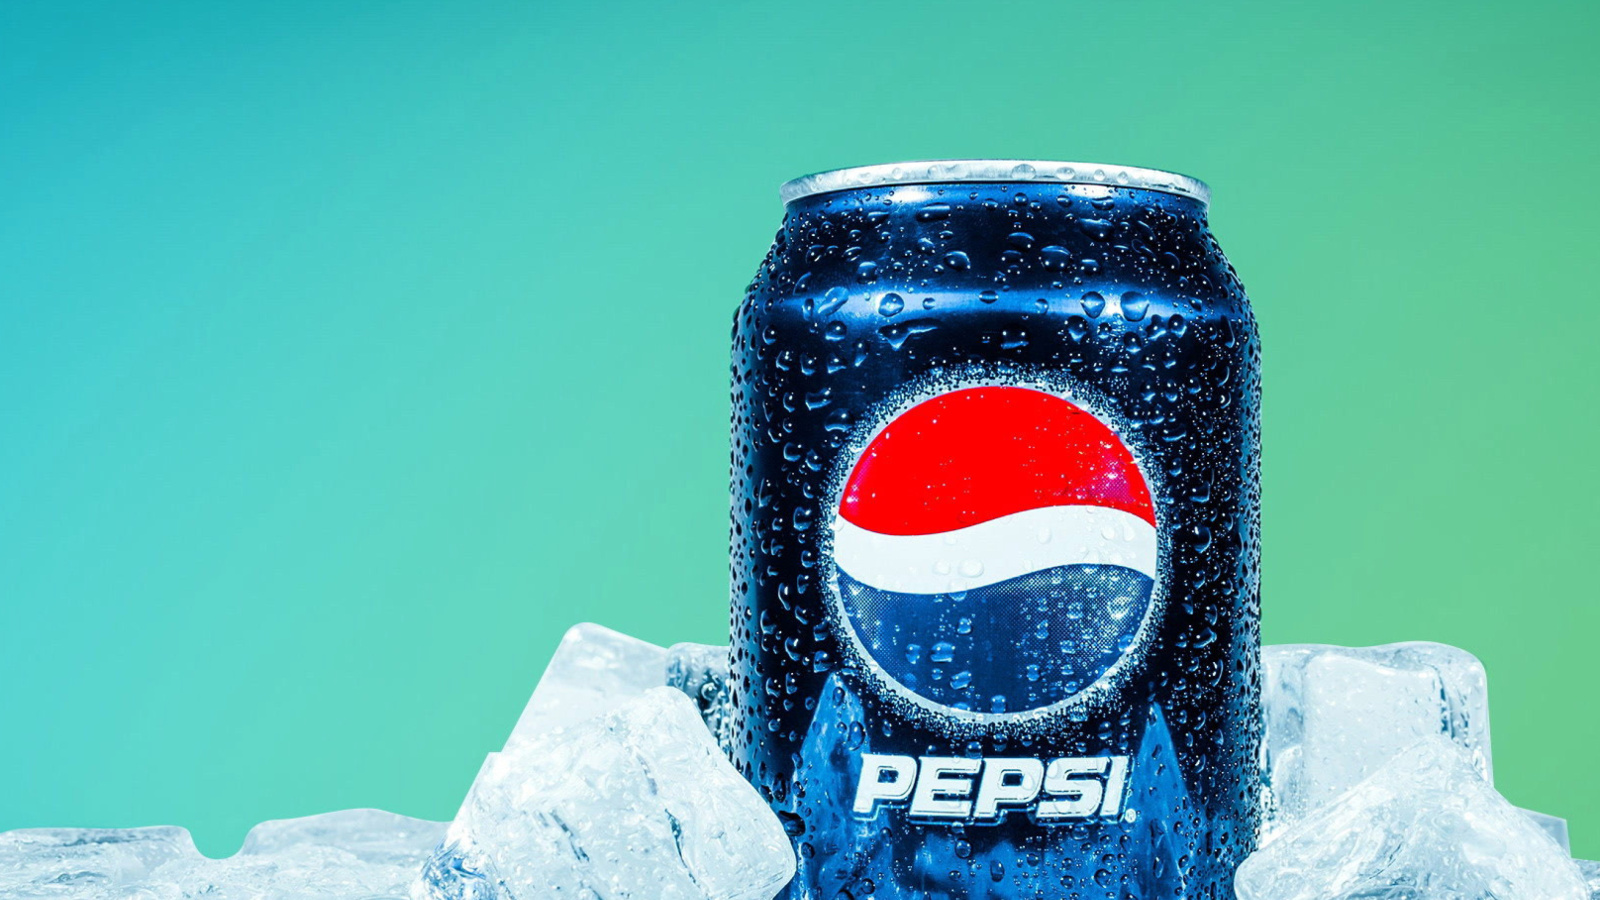 Sfondi Pepsi in Ice 1600x900